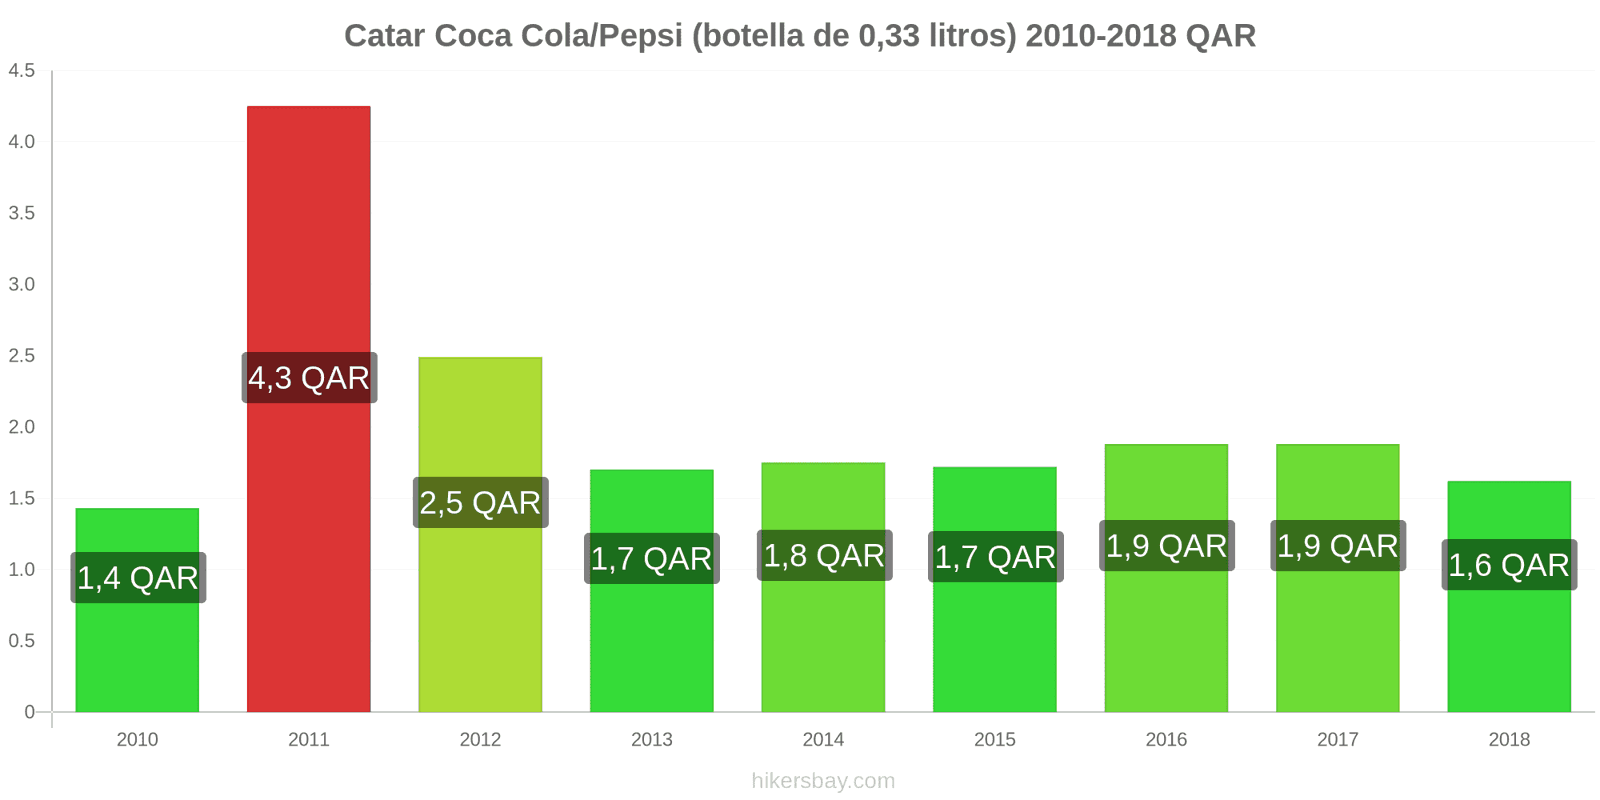 Catar cambios de precios Coca-Cola/Pepsi (botella de 0.33 litros) hikersbay.com